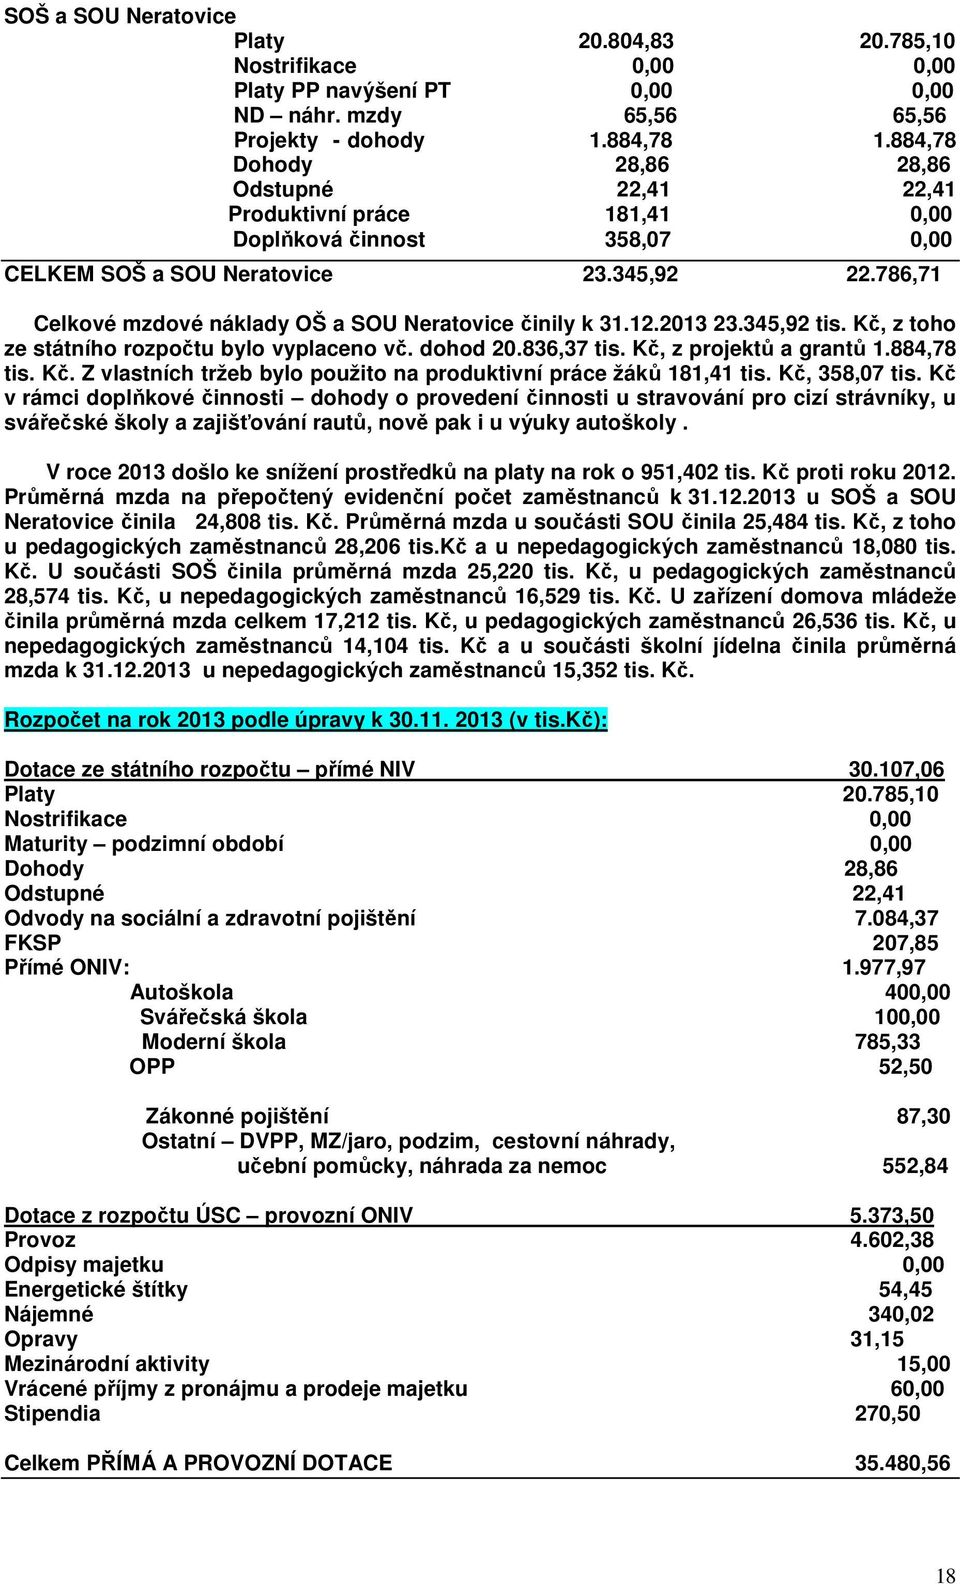 786,71 Celkové mzdové náklady OŠ a SOU Neratovice činily k 31.12.2013 23.345,92 tis. Kč, z toho ze státního rozpočtu bylo vyplaceno vč. dohod 20.836,37 tis. Kč, z projektů a grantů 1.884,78 tis. Kč. Z vlastních tržeb bylo použito na produktivní práce žáků 181,41 tis.